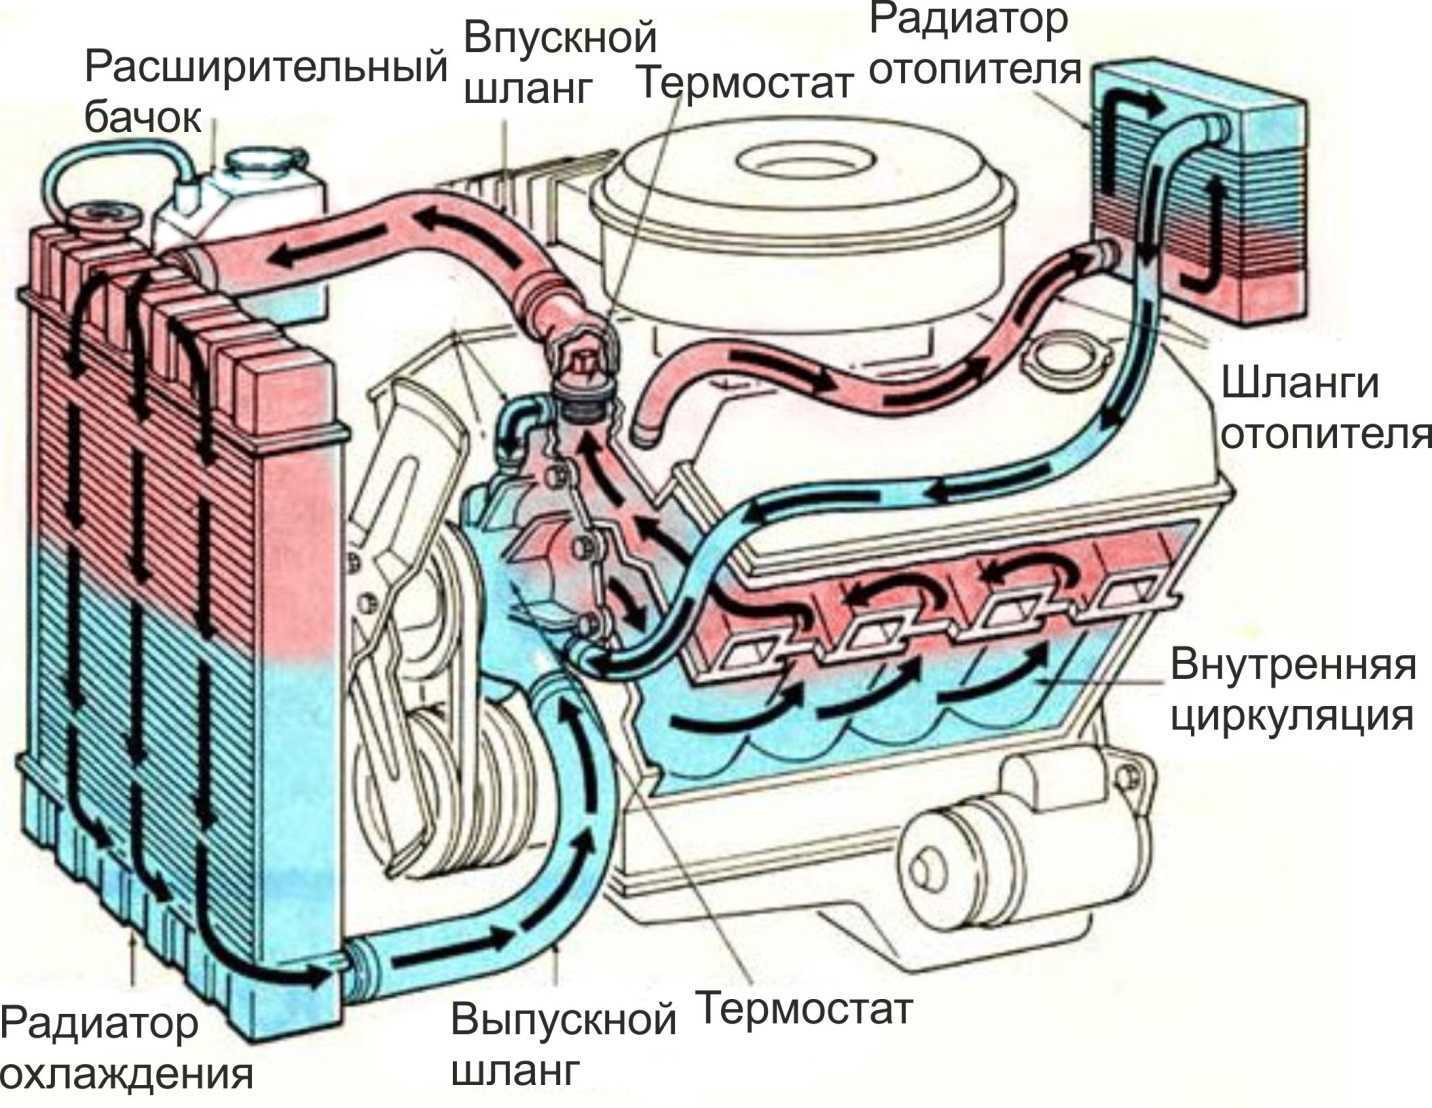 Устройство системы охлаждения мотора и принцип ее работы